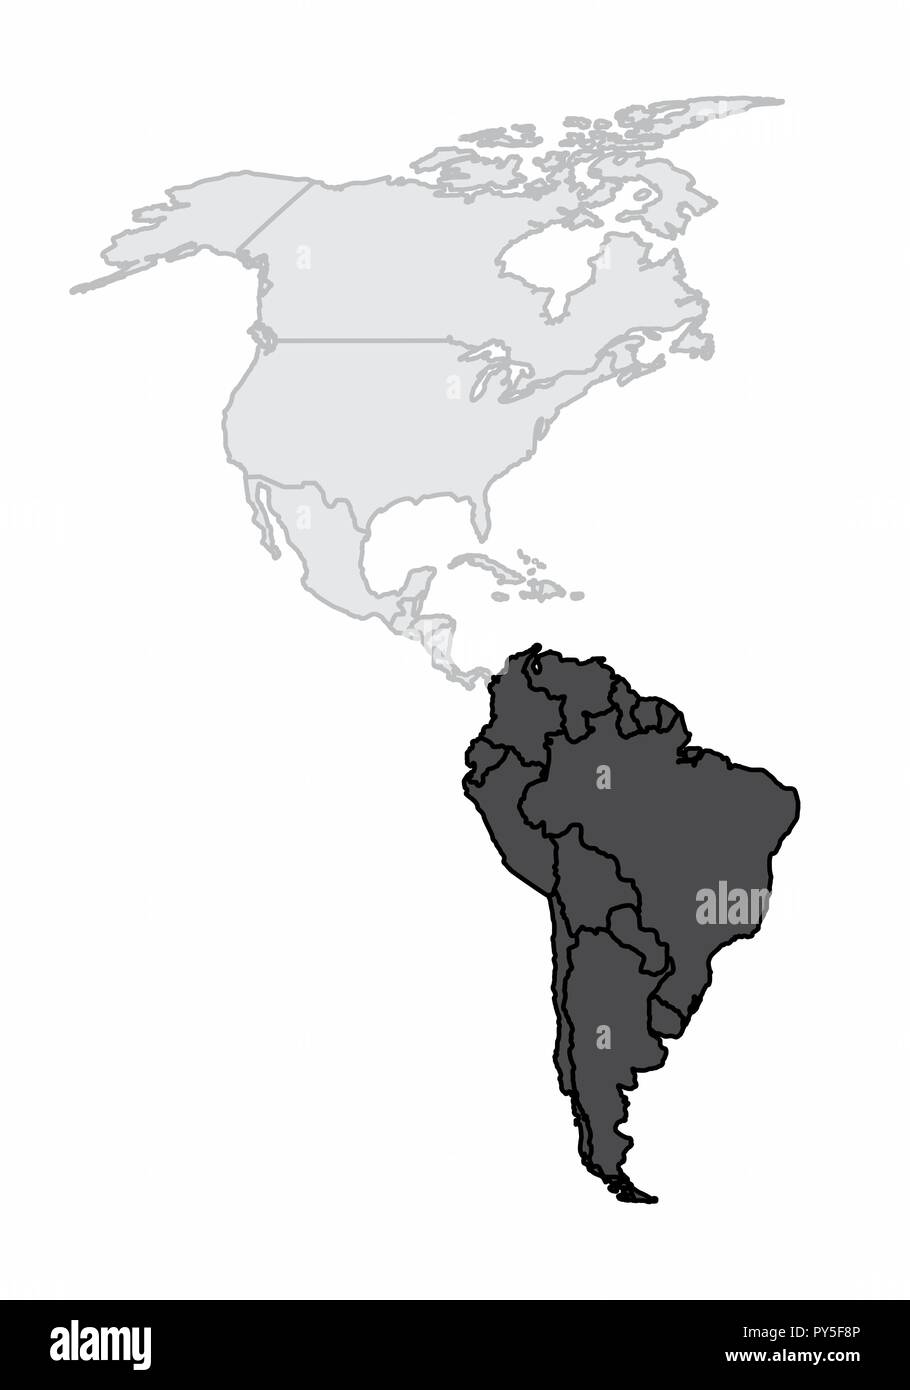 Eine Karte der amerikanische Kontinent mit dem Südamerika hervorgehoben Stock Vektor